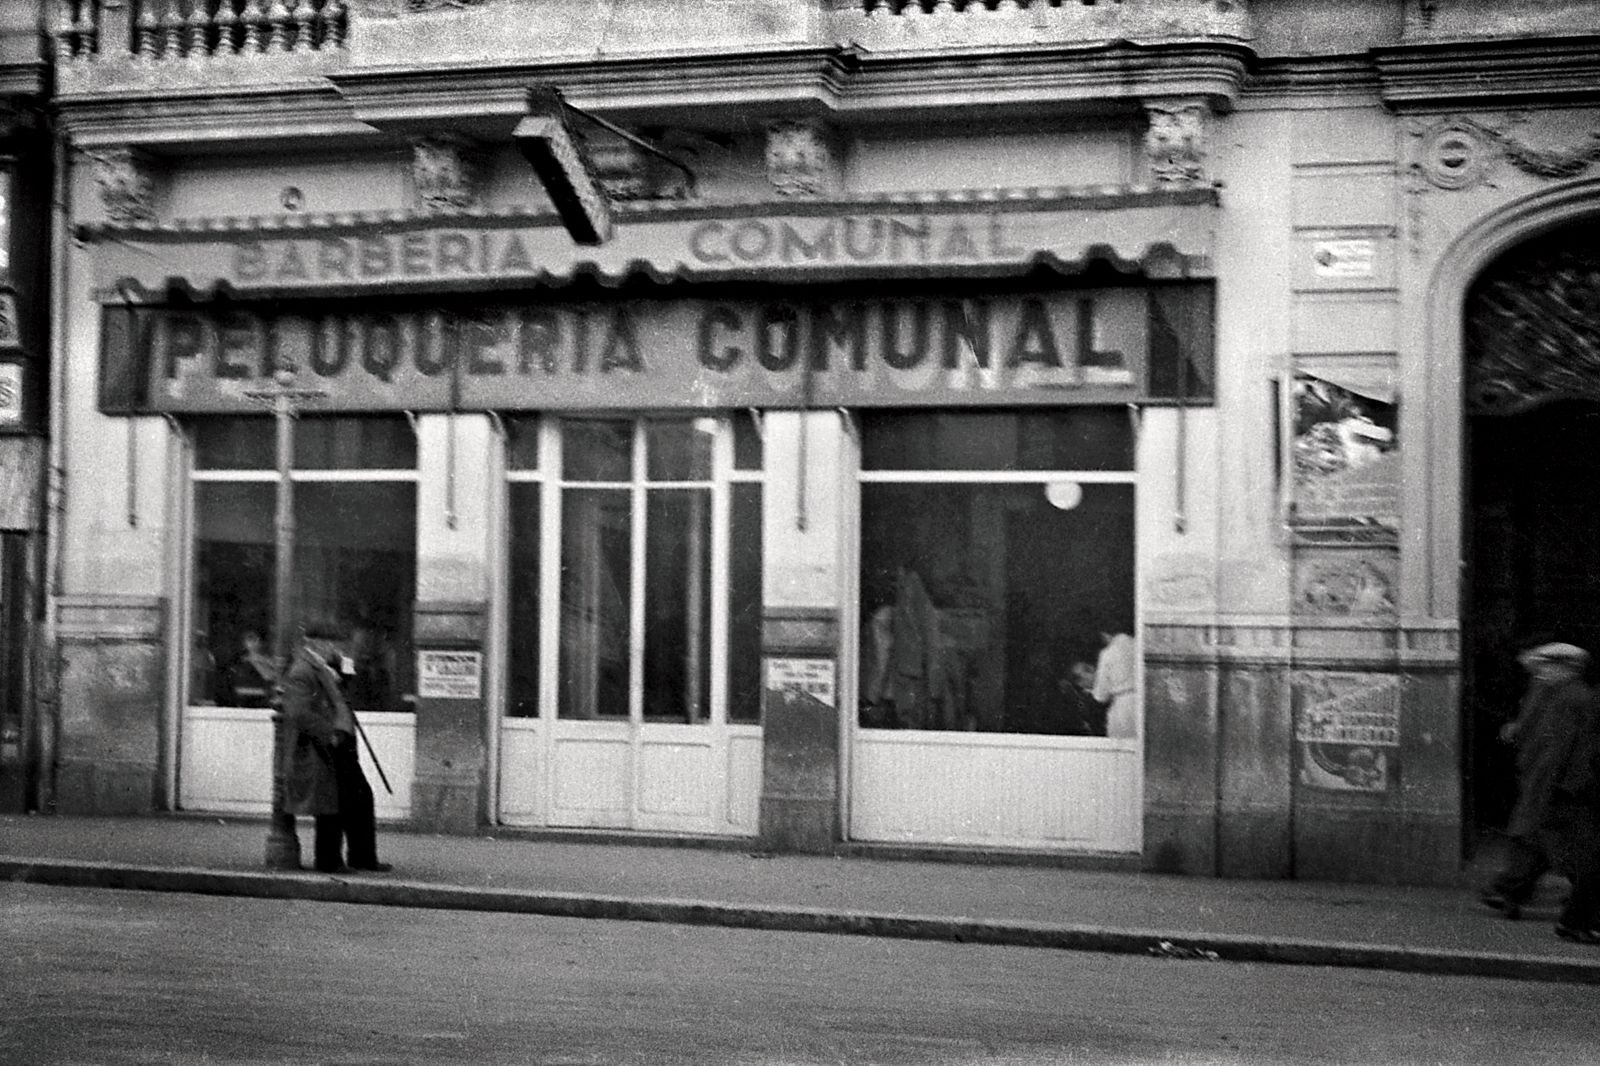 Peluqueria Comunal, en calle de La Paz. 1937. Joaquin Sánchez “Finezas”. Biblioteca Valenciana Nicolau Primitiu. Fondo Finezas.